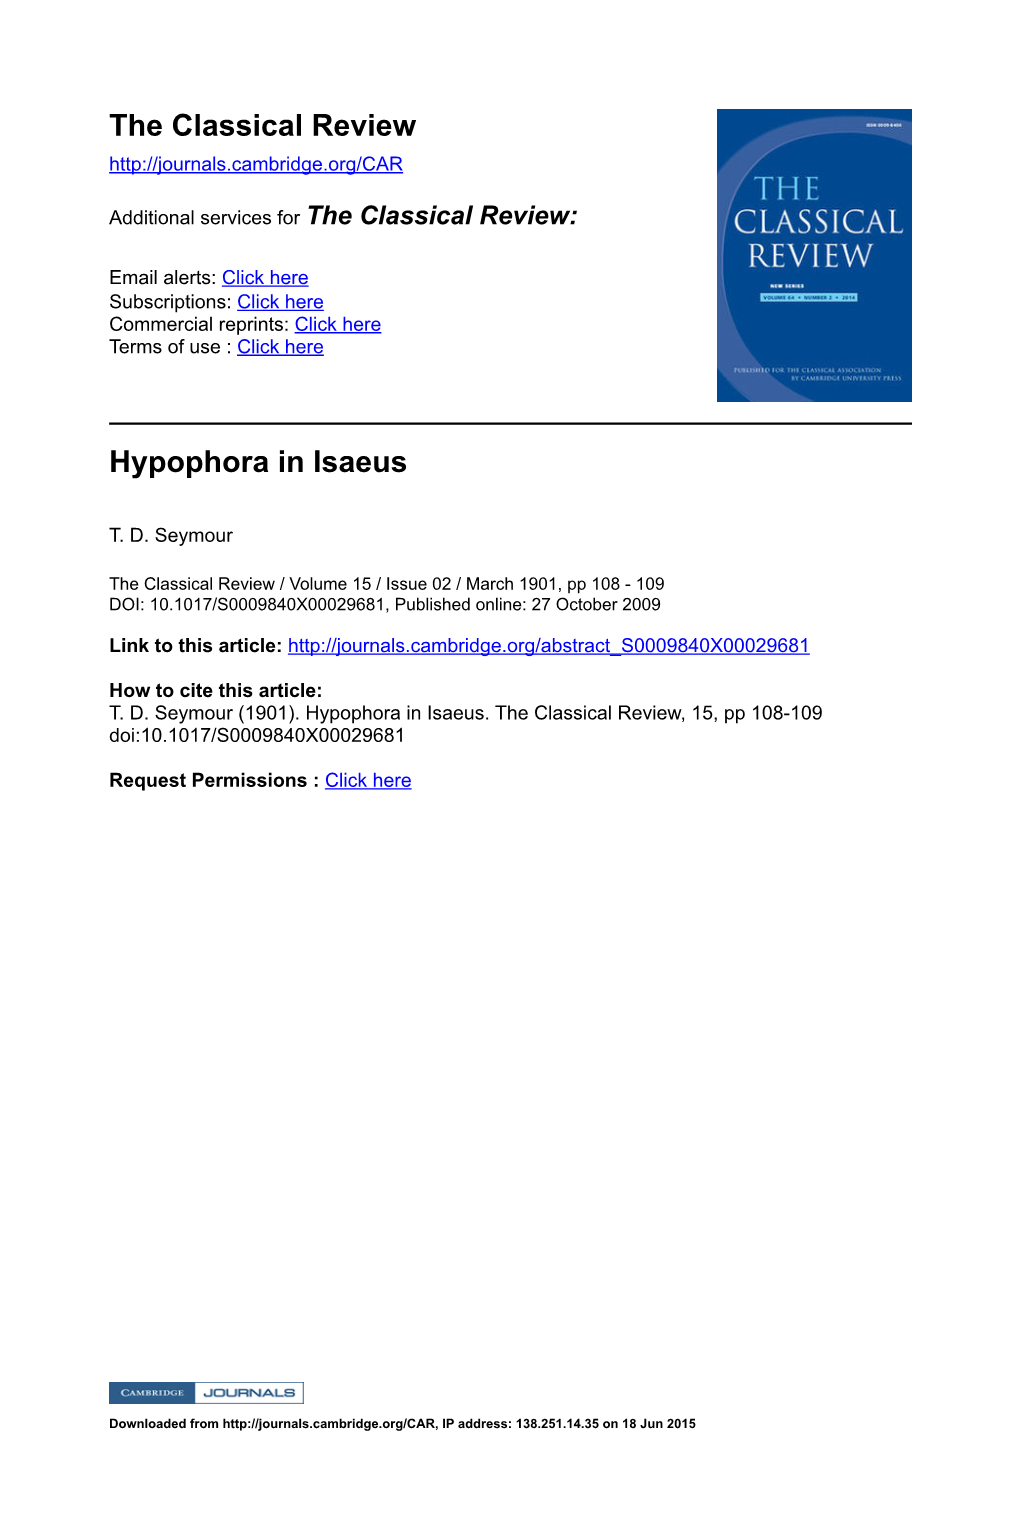 Hypophora in Isaeus